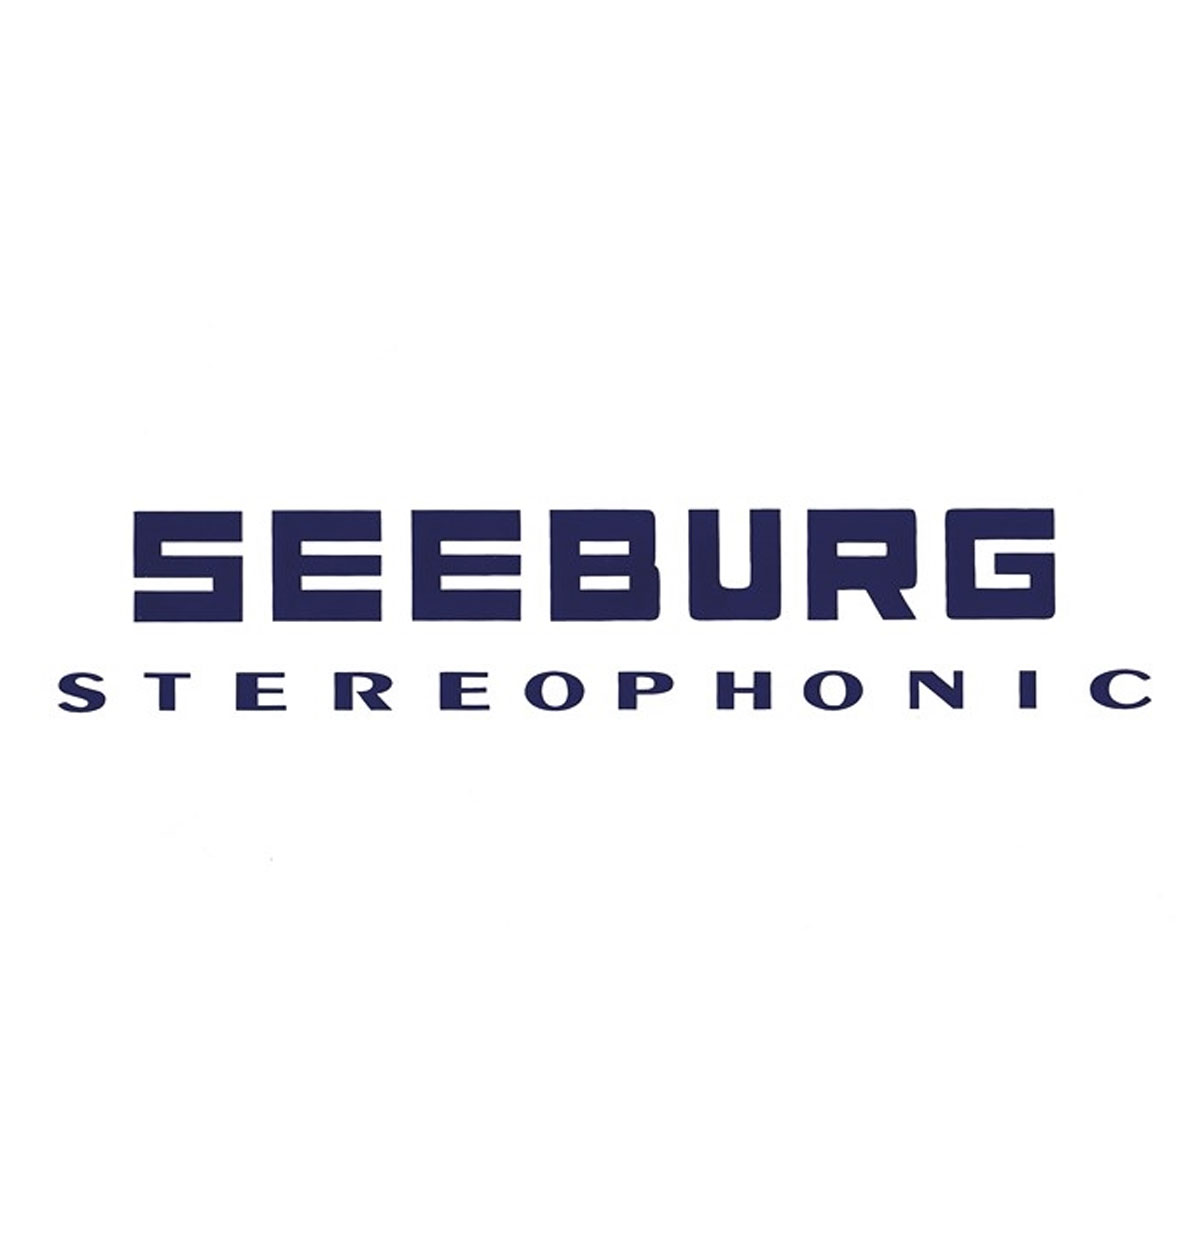 Seeburg stereophonic achterdeur sticker (boven) model 220 - 222